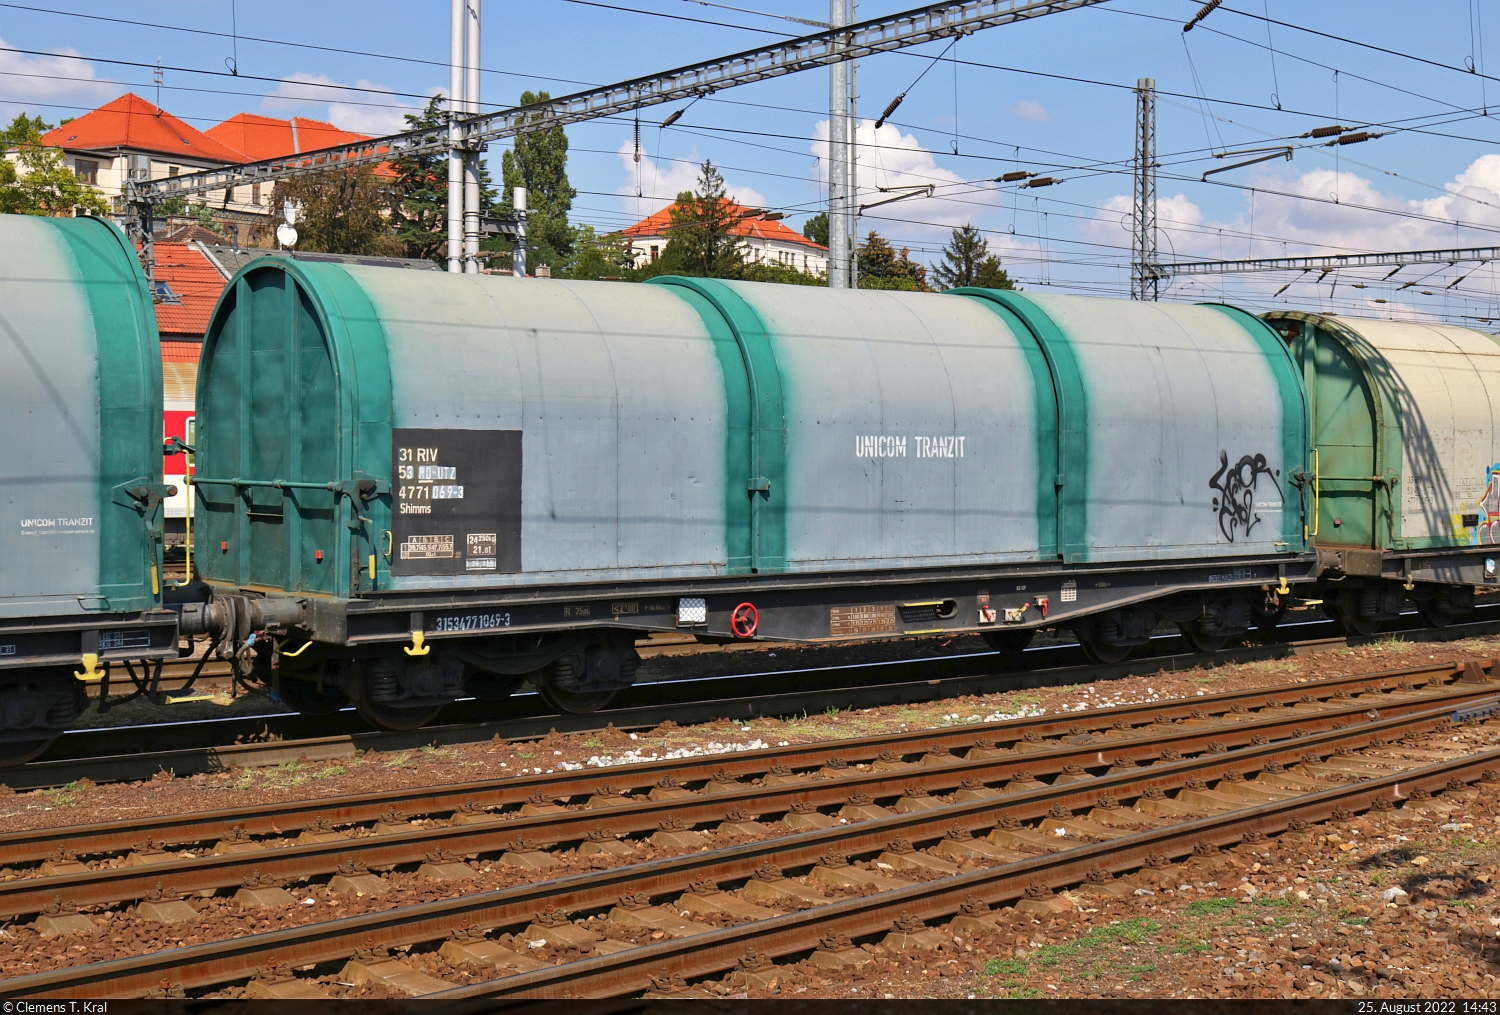 Vierachsiger rumänischer Teleskophauben-Wagen mit der Bezeichnung  Shimms  (31 53 4771 069-3 RO-UTZ), hier mit grünlicher Farbgebung, eingereiht in einem artverwandten Güterzug 240 108-1 auf der Fahrt durch Bratislava hl.st. (SK) in östlicher Richtung.
Die Aufnahme entstand vom Hausbahnsteig.

🧰 Unicom Tranzit S.A.
🕓 25.8.2022 | 14:43 Uhr